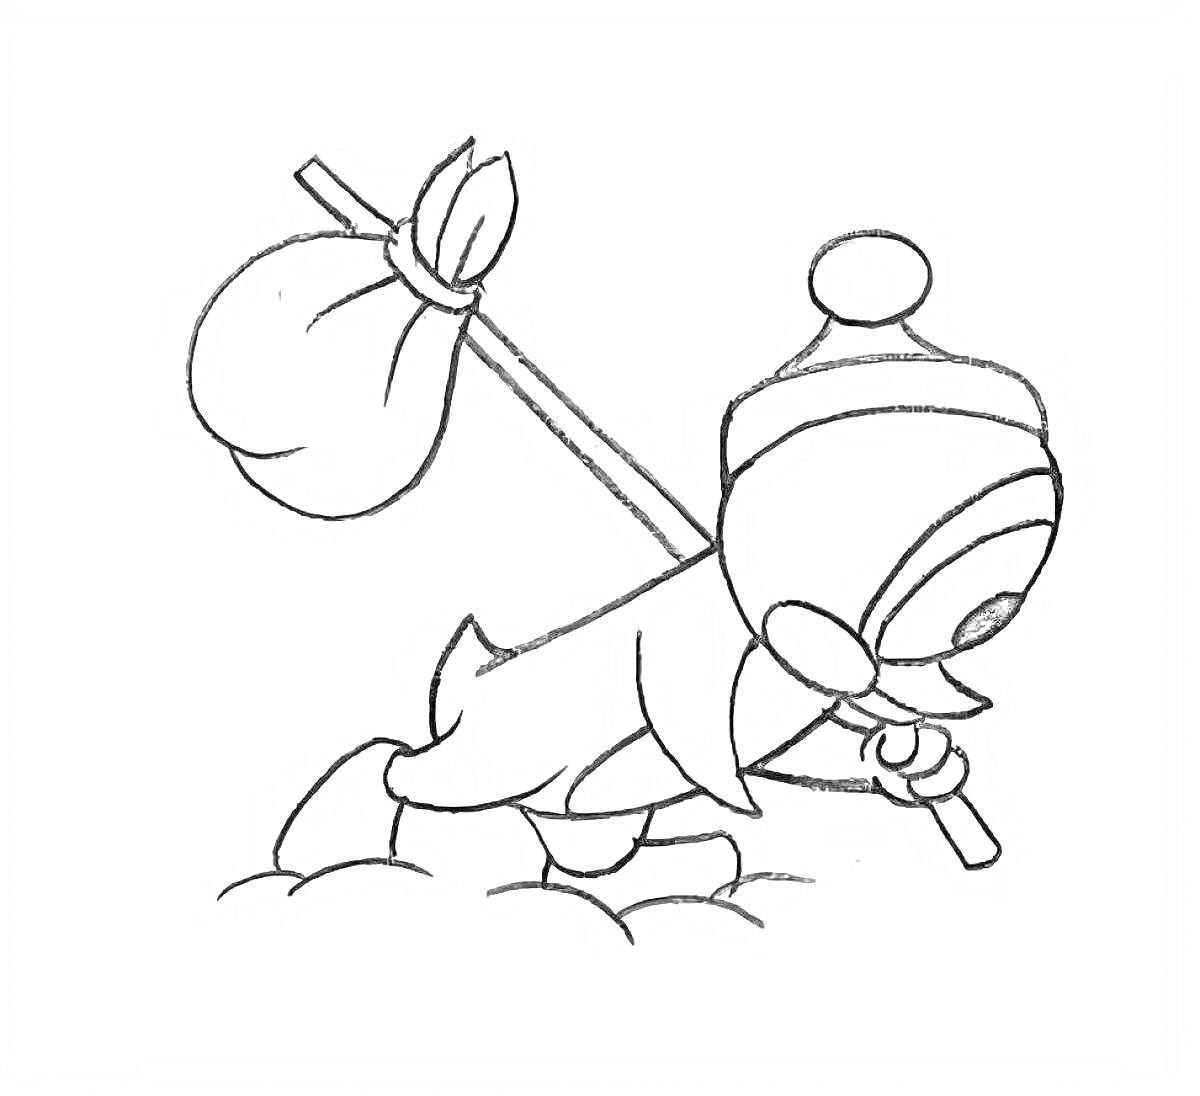 Раскраска Персонаж в шапке с помпоном, несущий узелок на палке по снегу